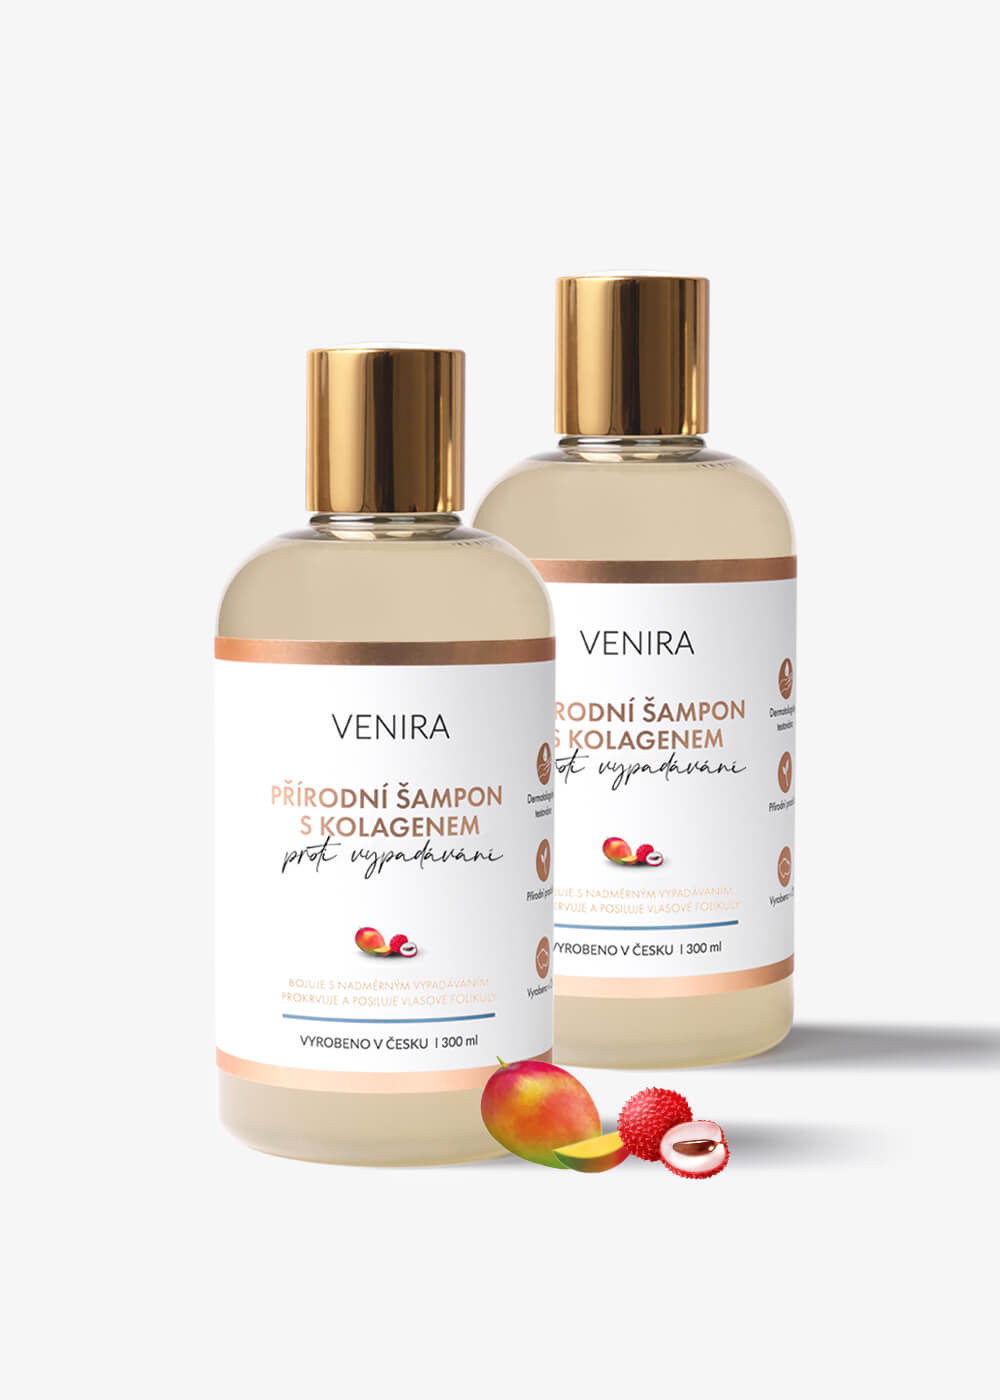 VENIRA přírodní šampon s kolagenem proti vypadávání vlasů, 2 balení za výhodnější cenu, mango a liči